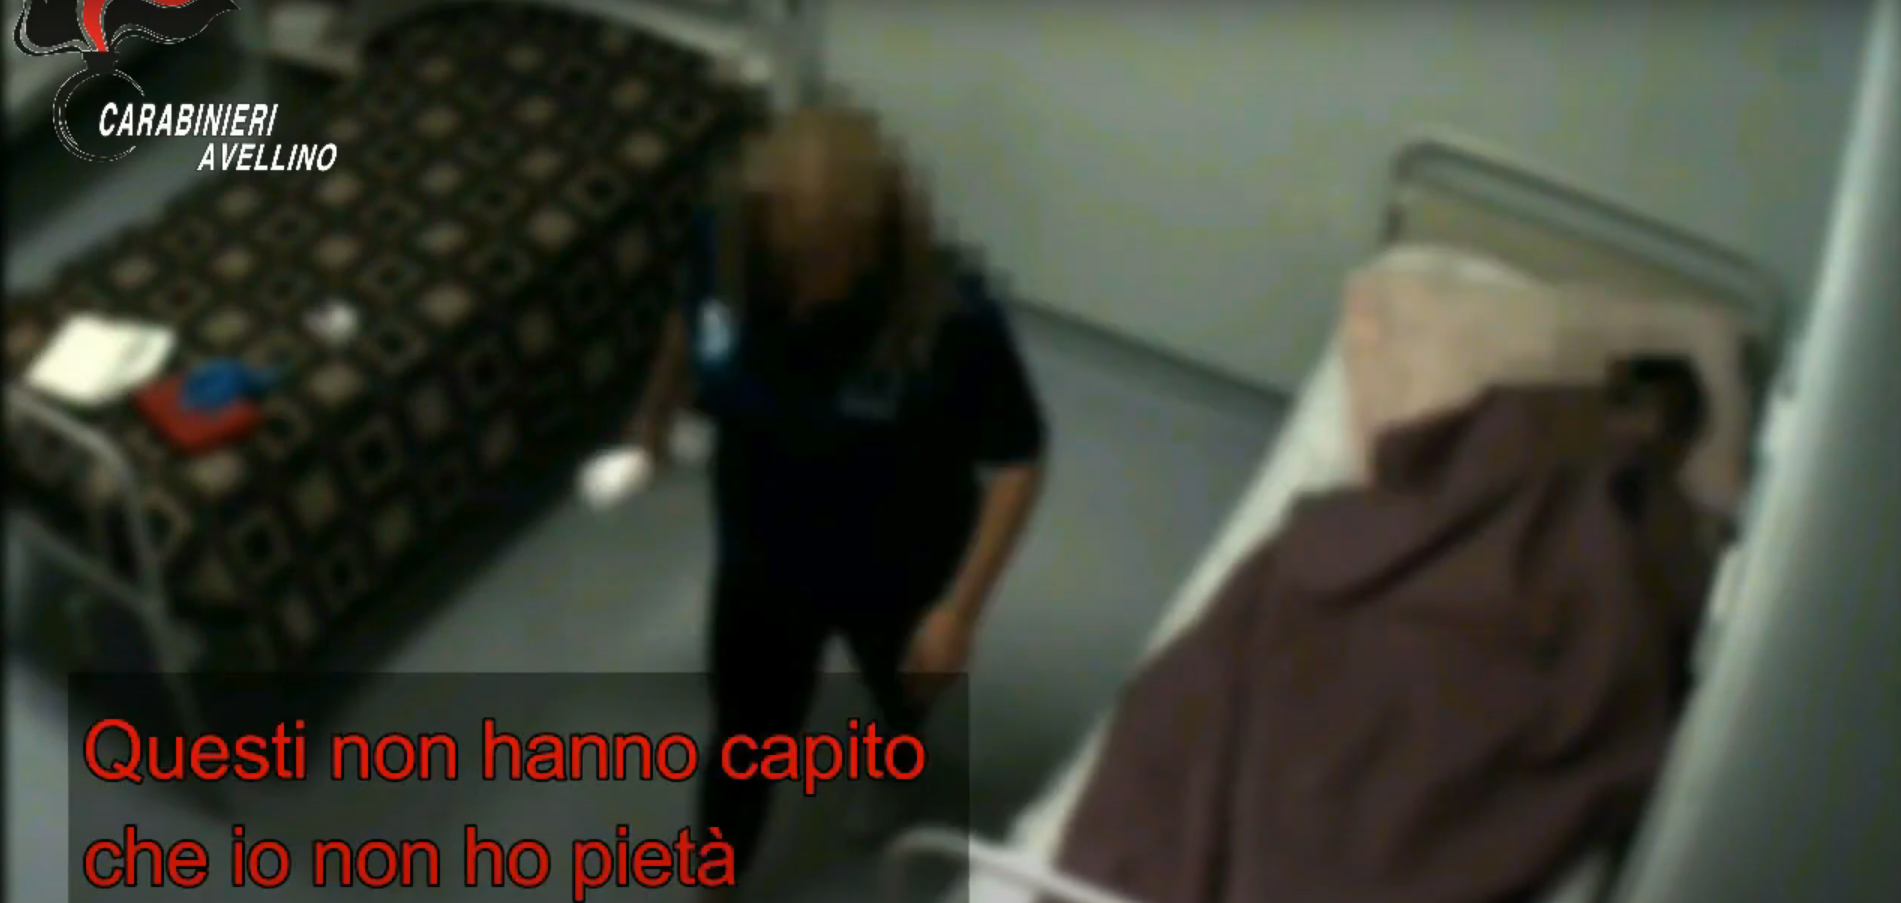 Maltrattamenti RSA Avellino, frame dal video dei carabinieri